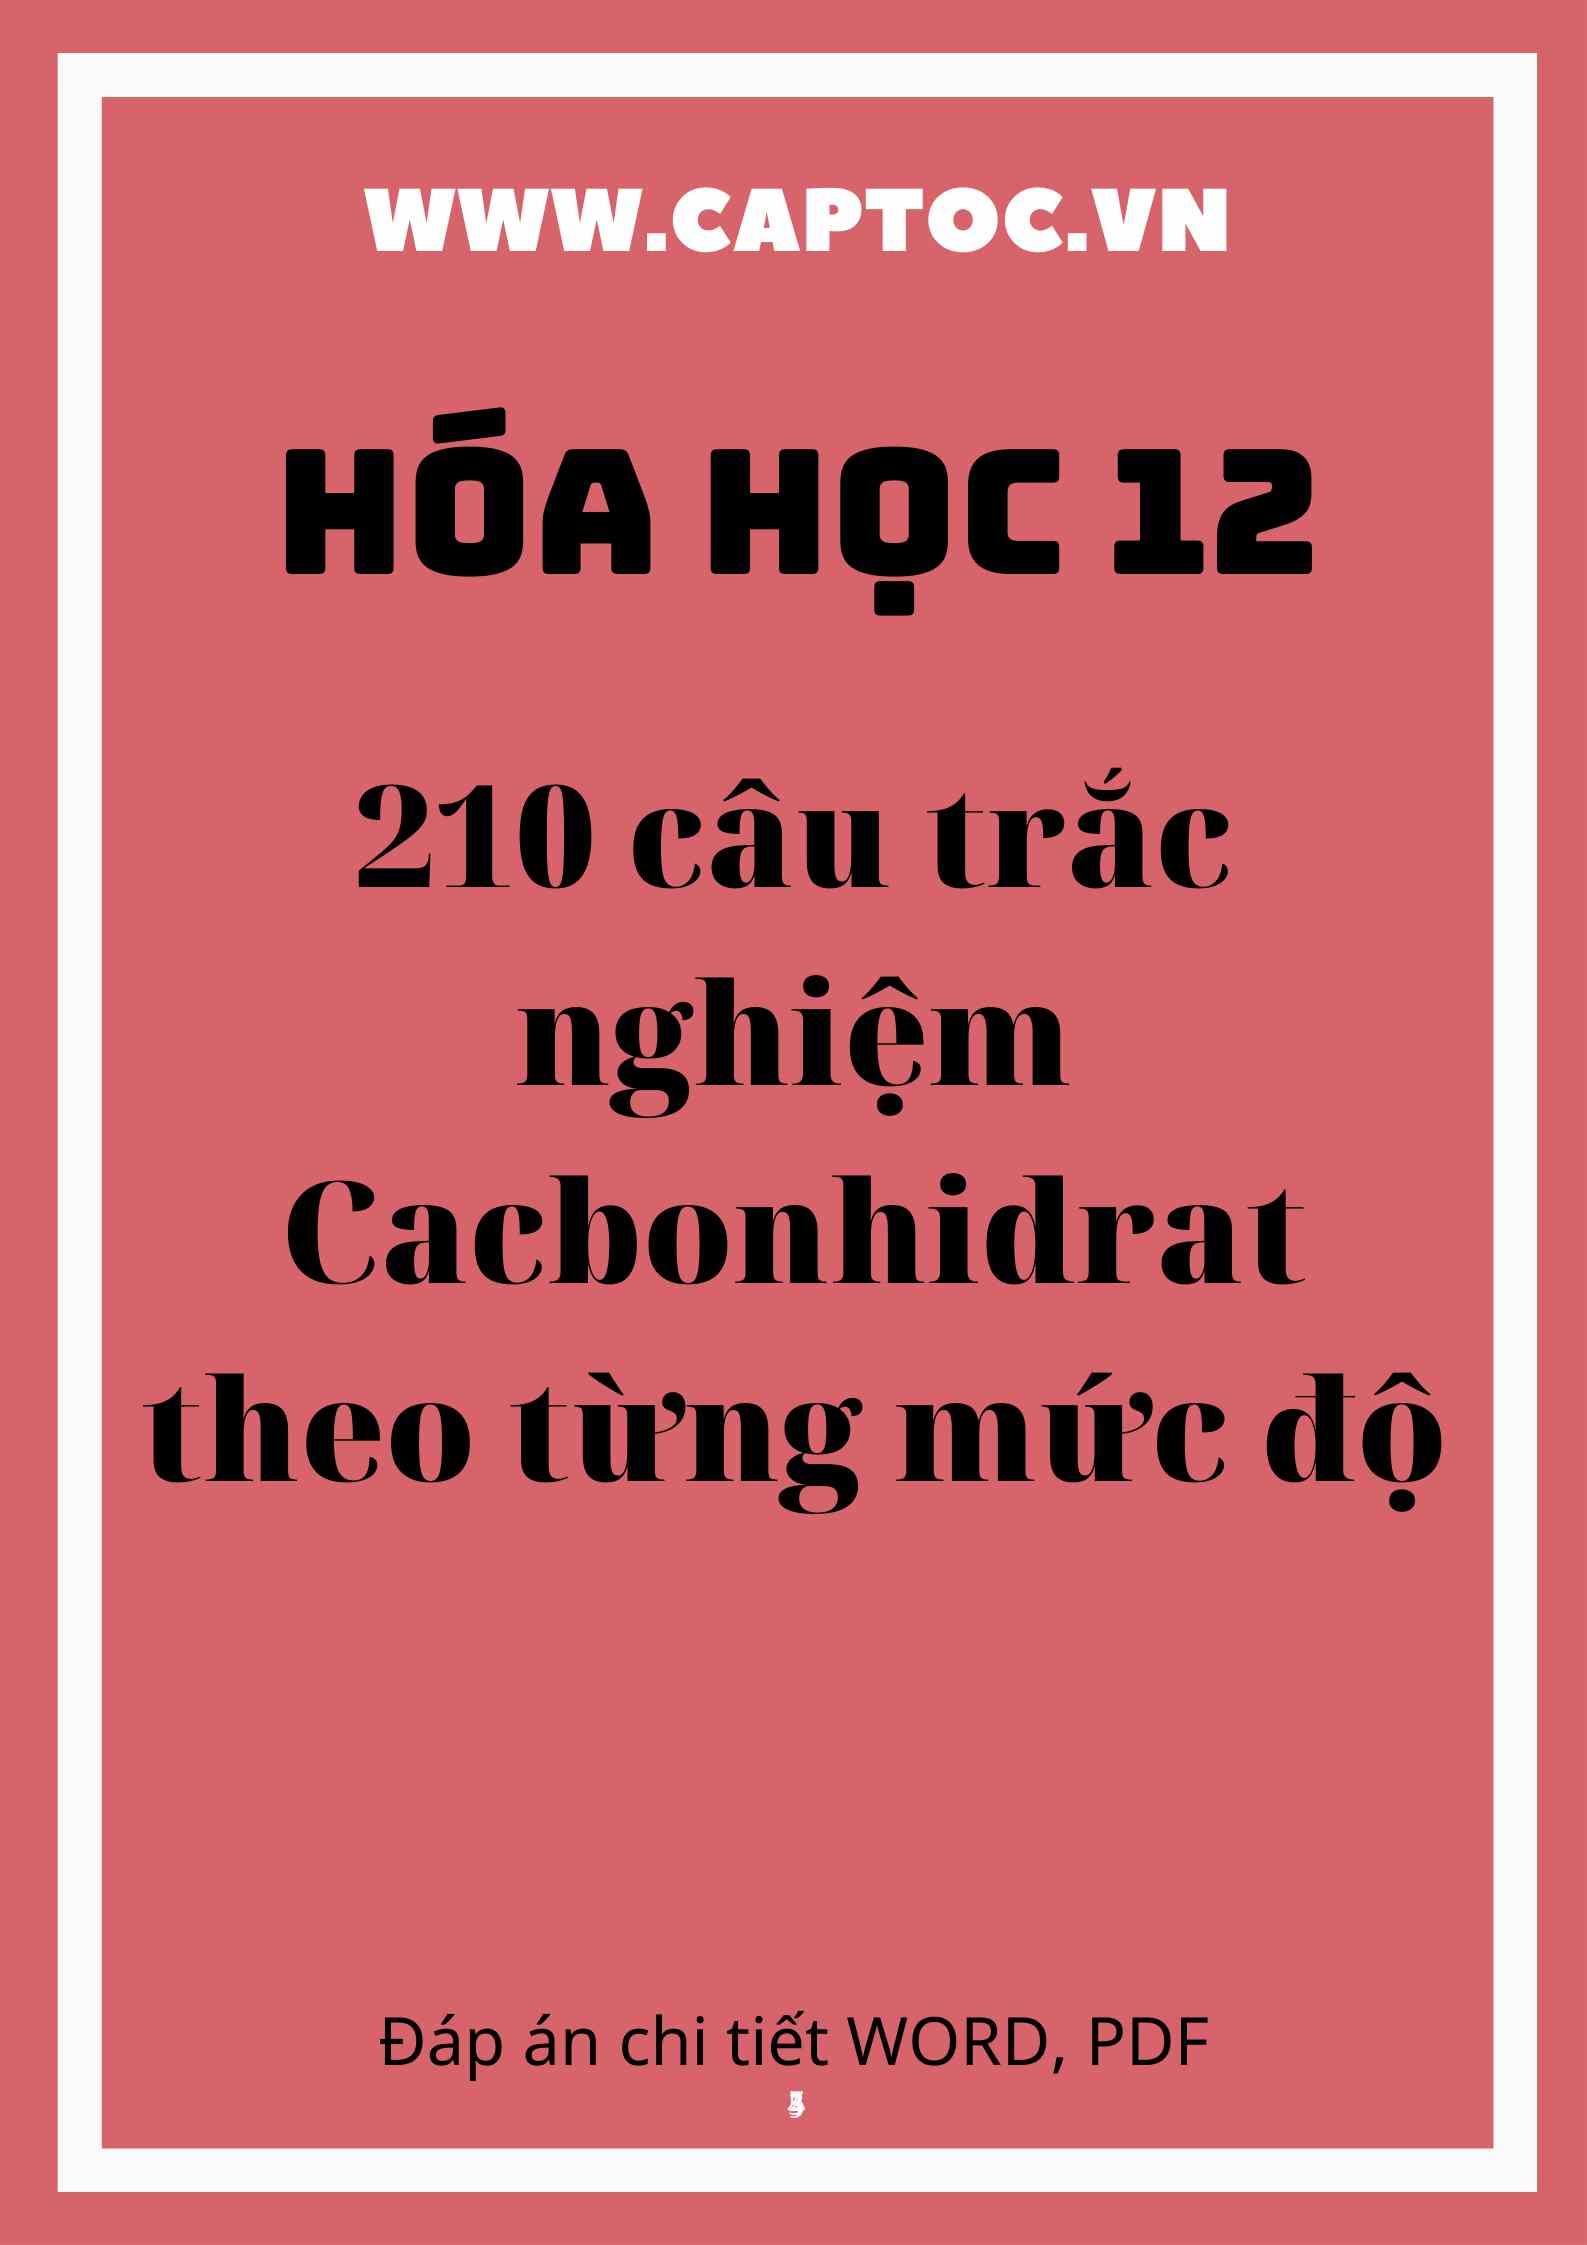 210 câu trắc nghiệm Cacbonhidrat theo từng mức độ